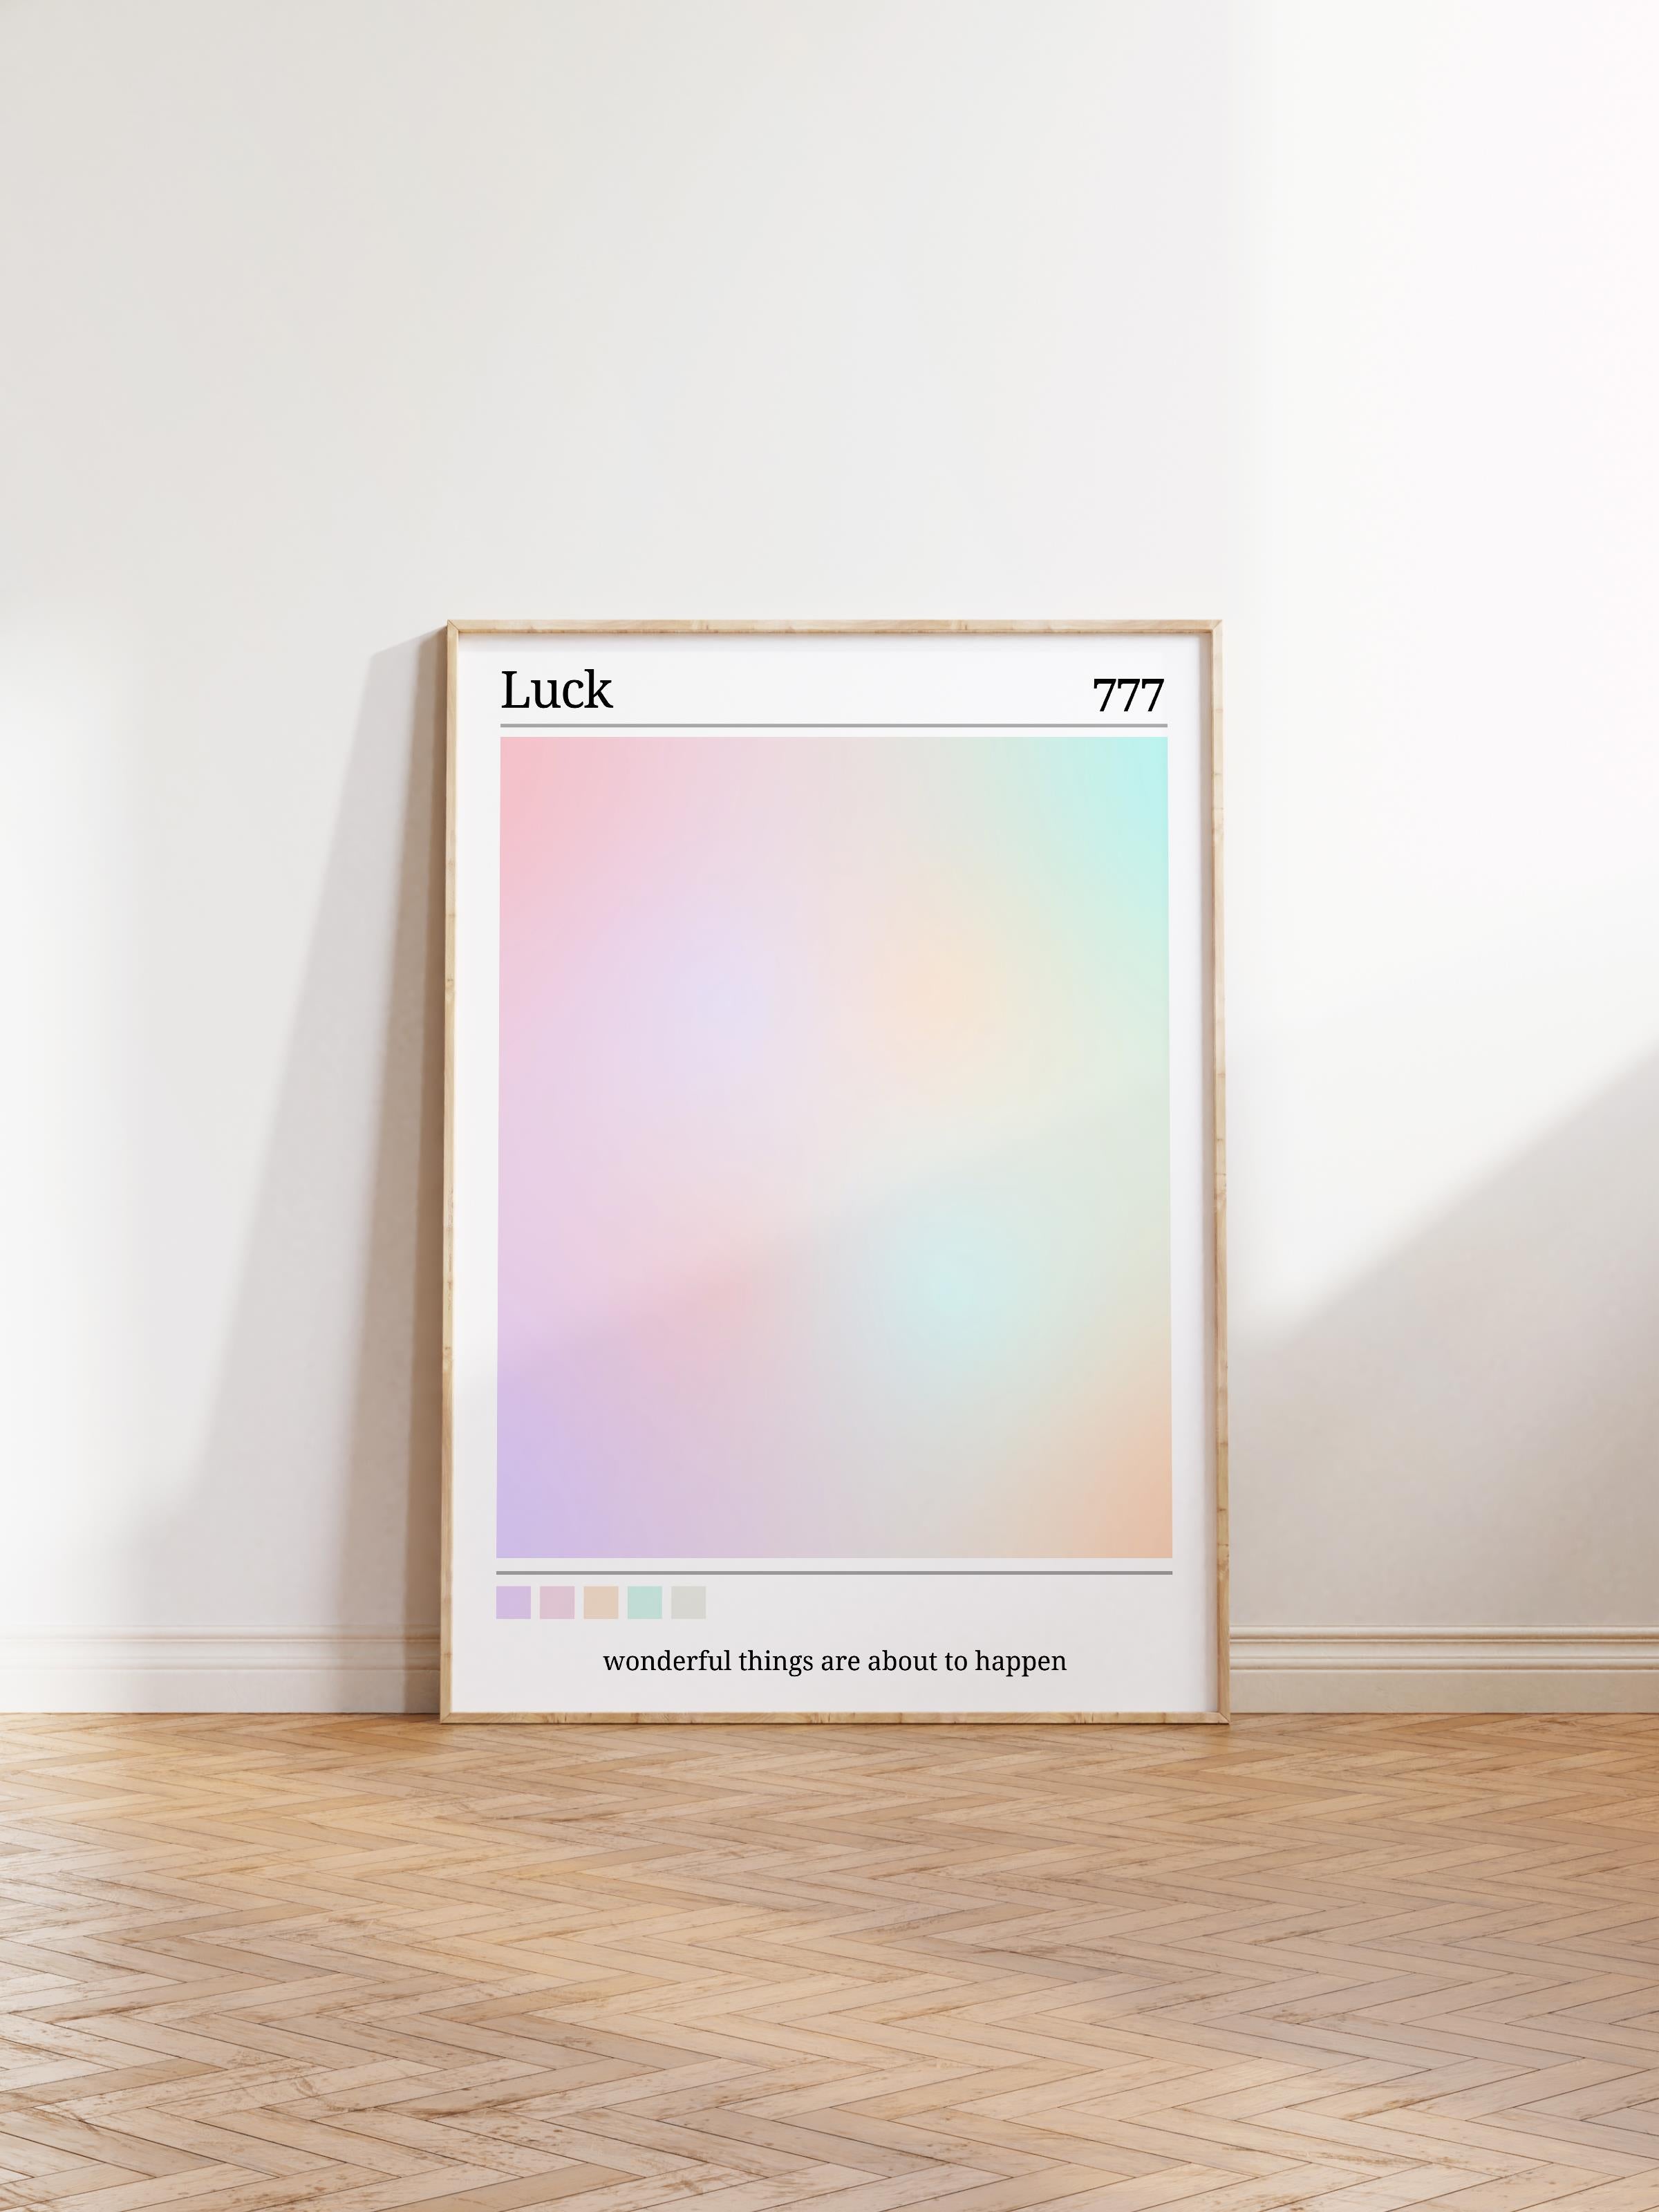 Çerçevesiz Poster, Aura Serisi NO:43 - 777 - Luck Karışık Aura, Melek Numaraları, Renkli Poster